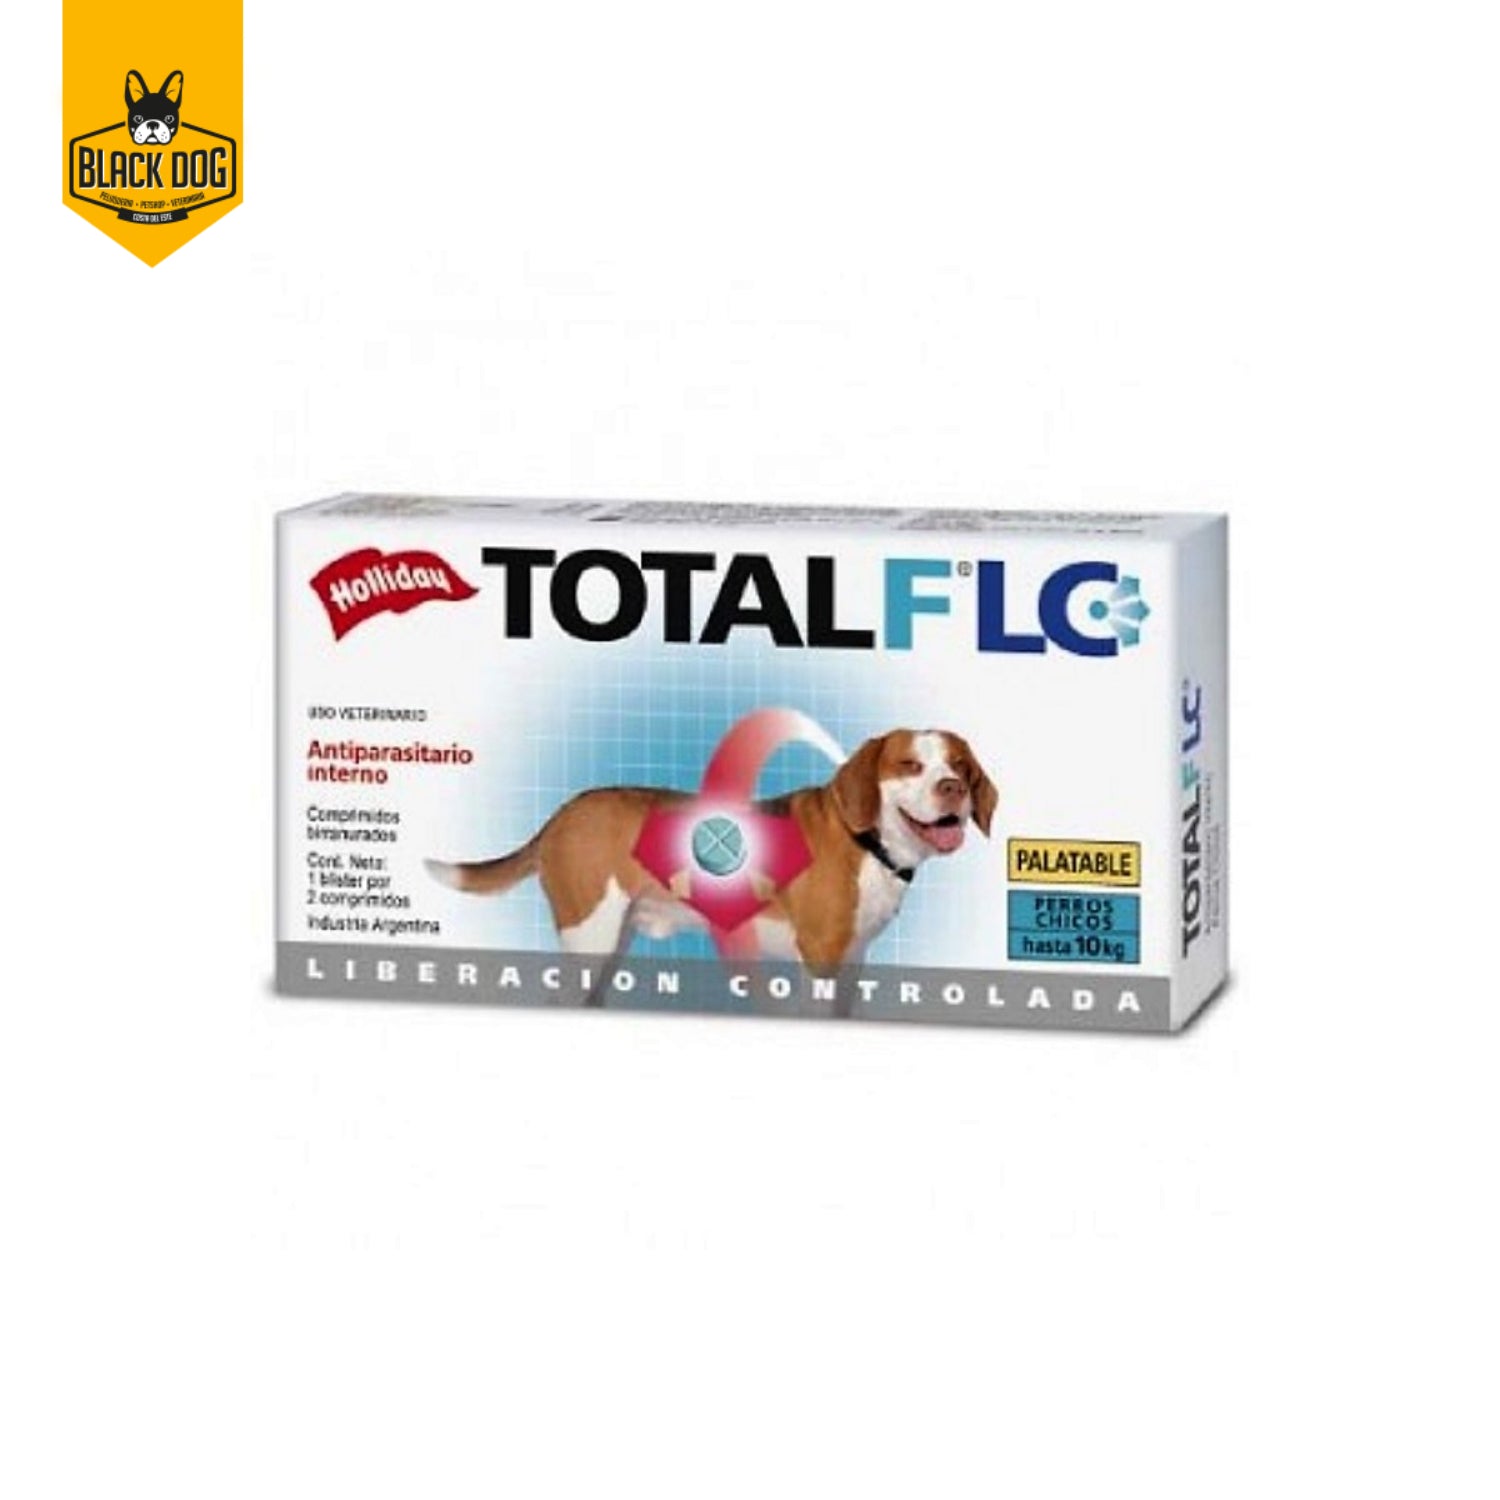 TOTAL FULL LC | Antiparasitario Perros Chicos 10 Kg | 2 Comprimidos - BlackDogPanama